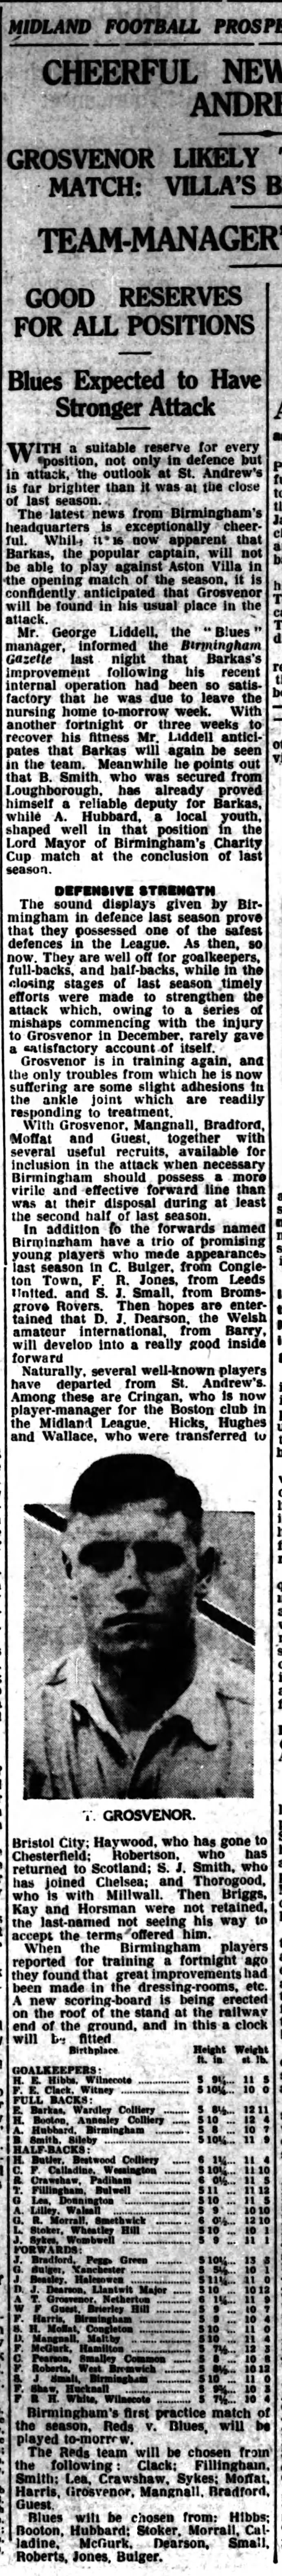 Birmingham FC 1934/35 preview